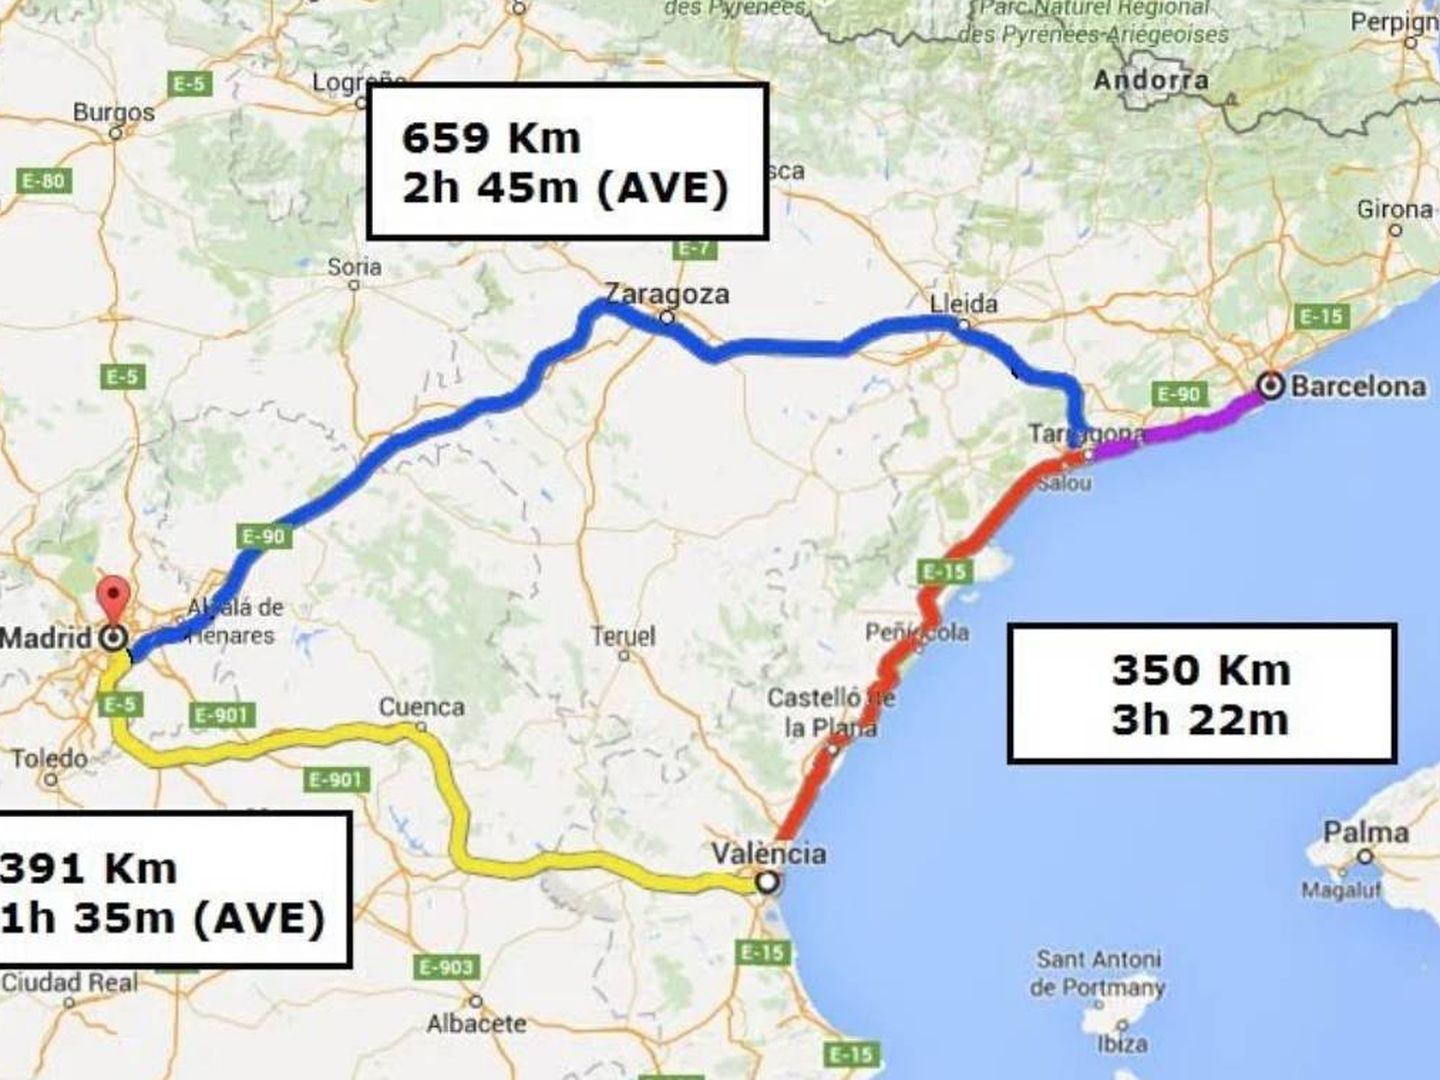 Tiempos de viaje y distancia en el triángulo Barcelona-Valencia-Madrid. (@josepboira)